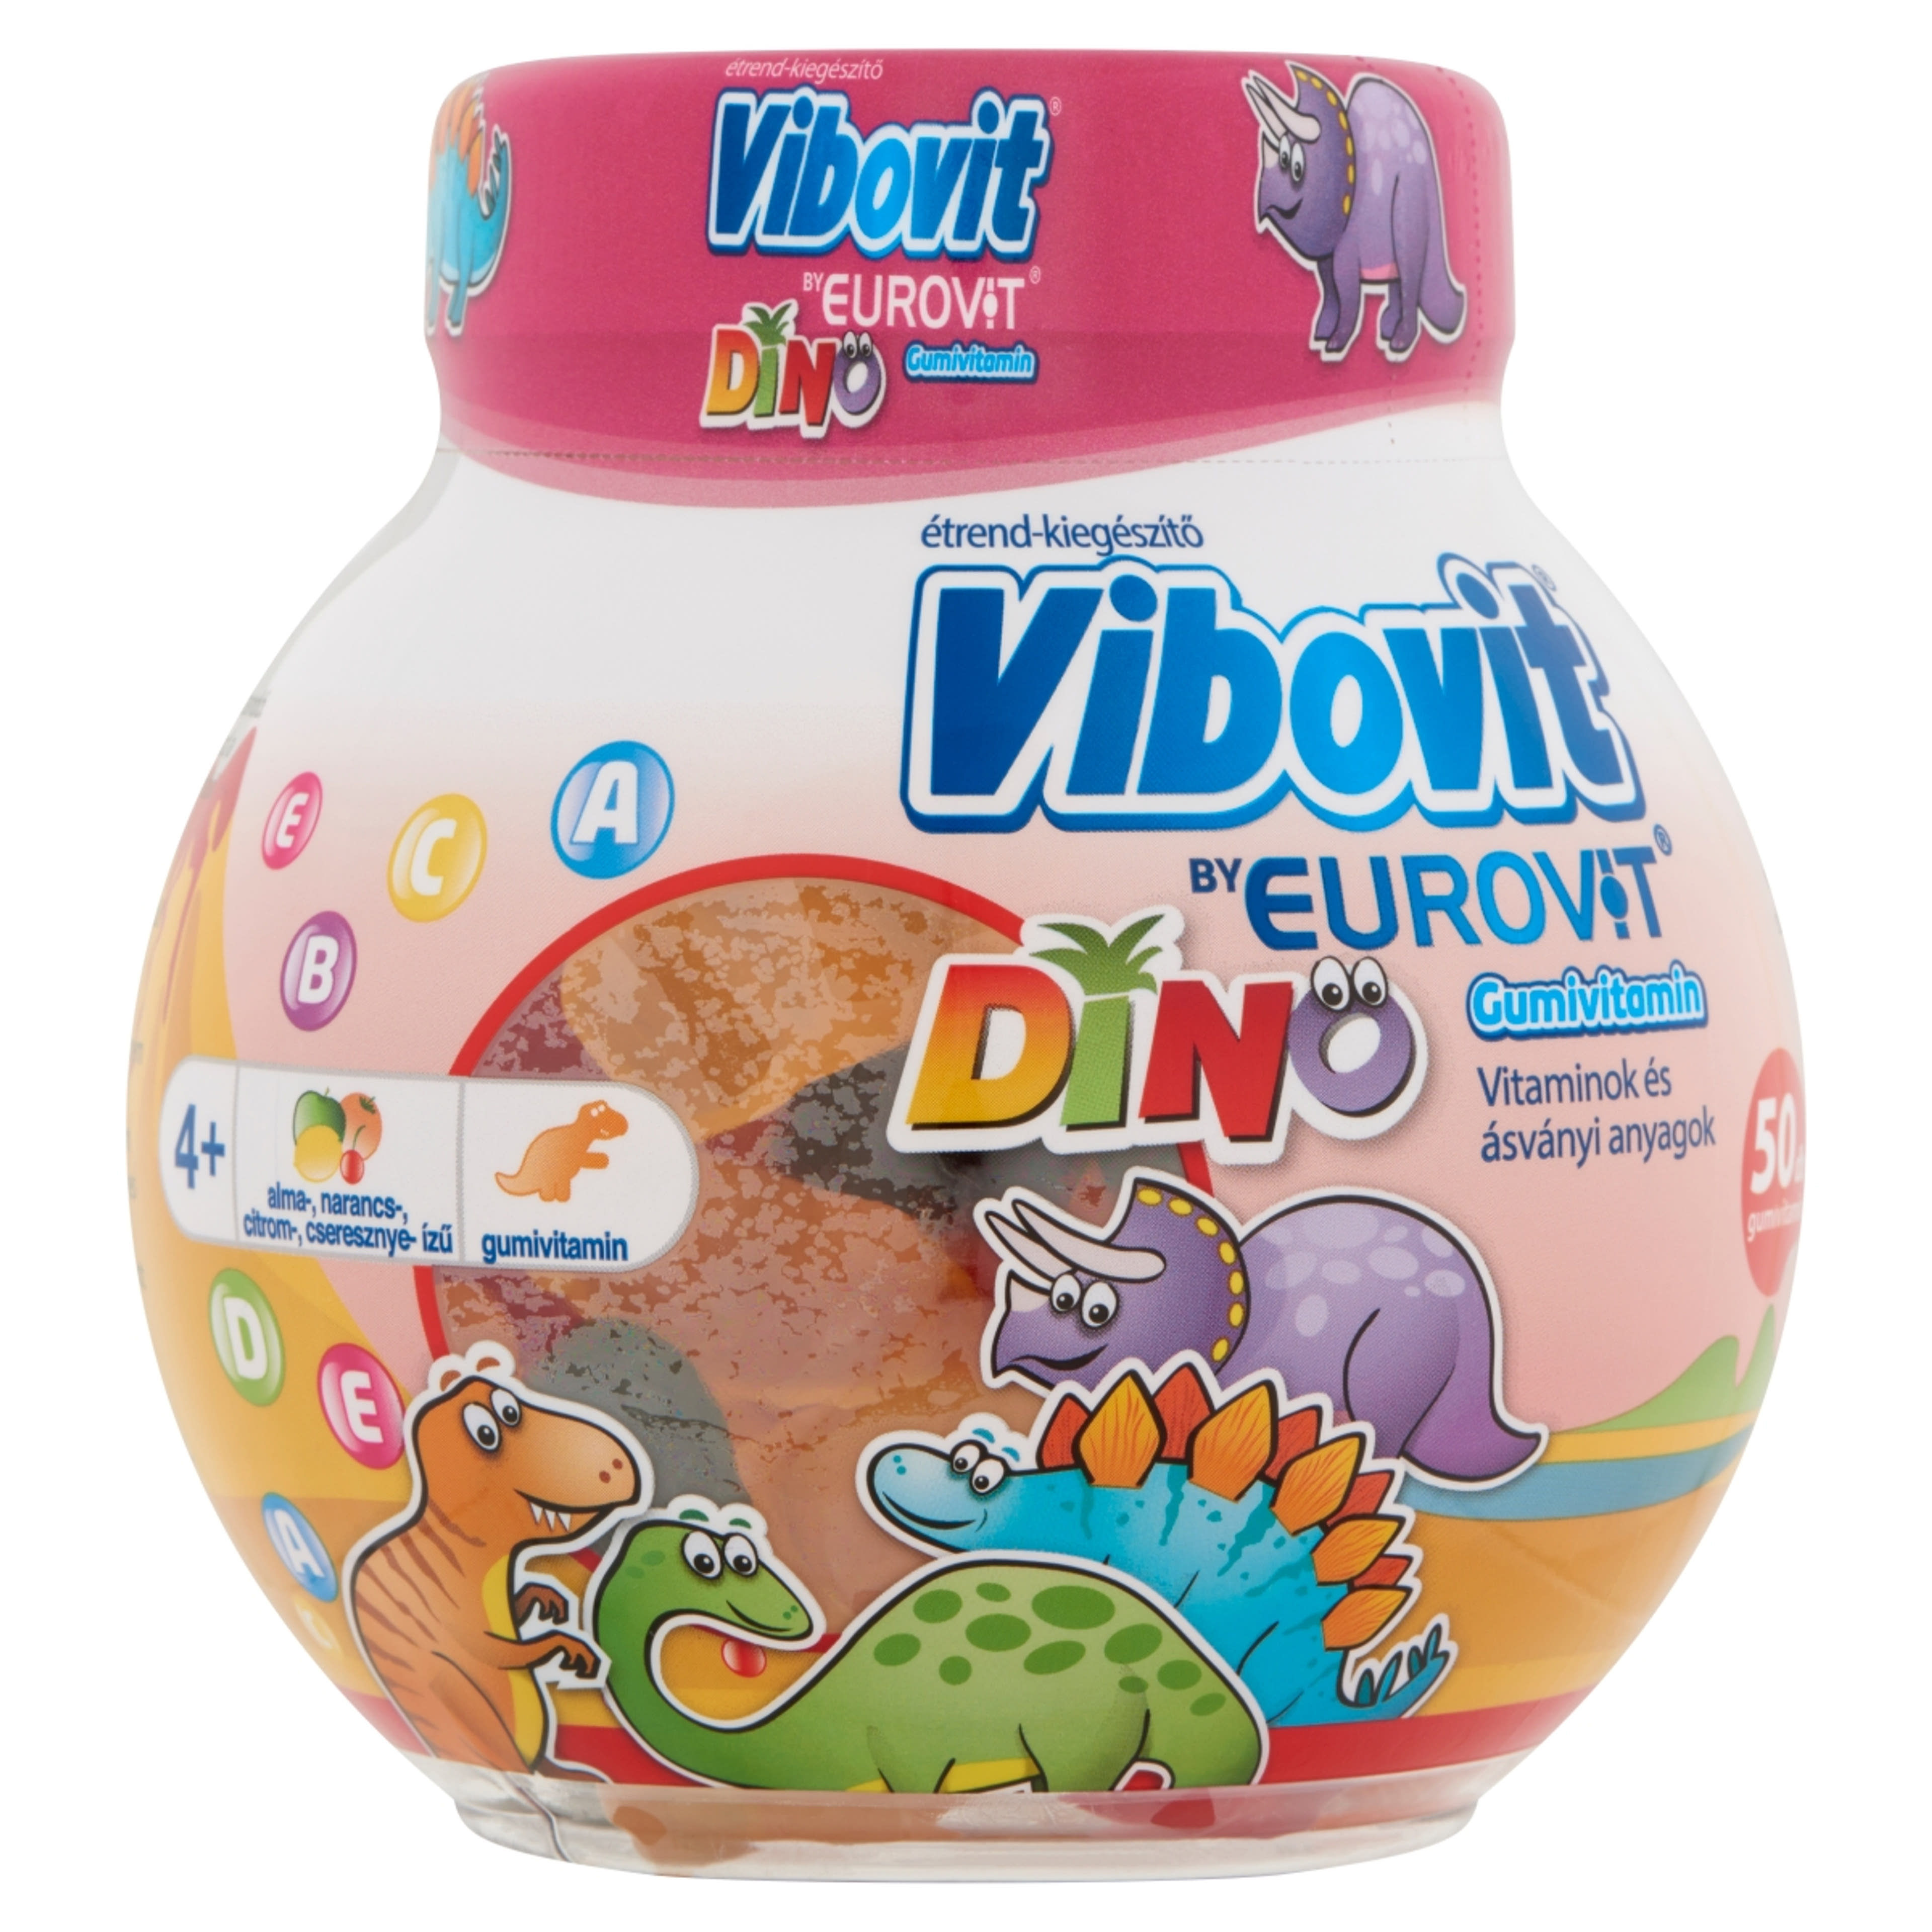 Vibovit Dino Gyümölcsös Ízű Gumivitamin - 50 db